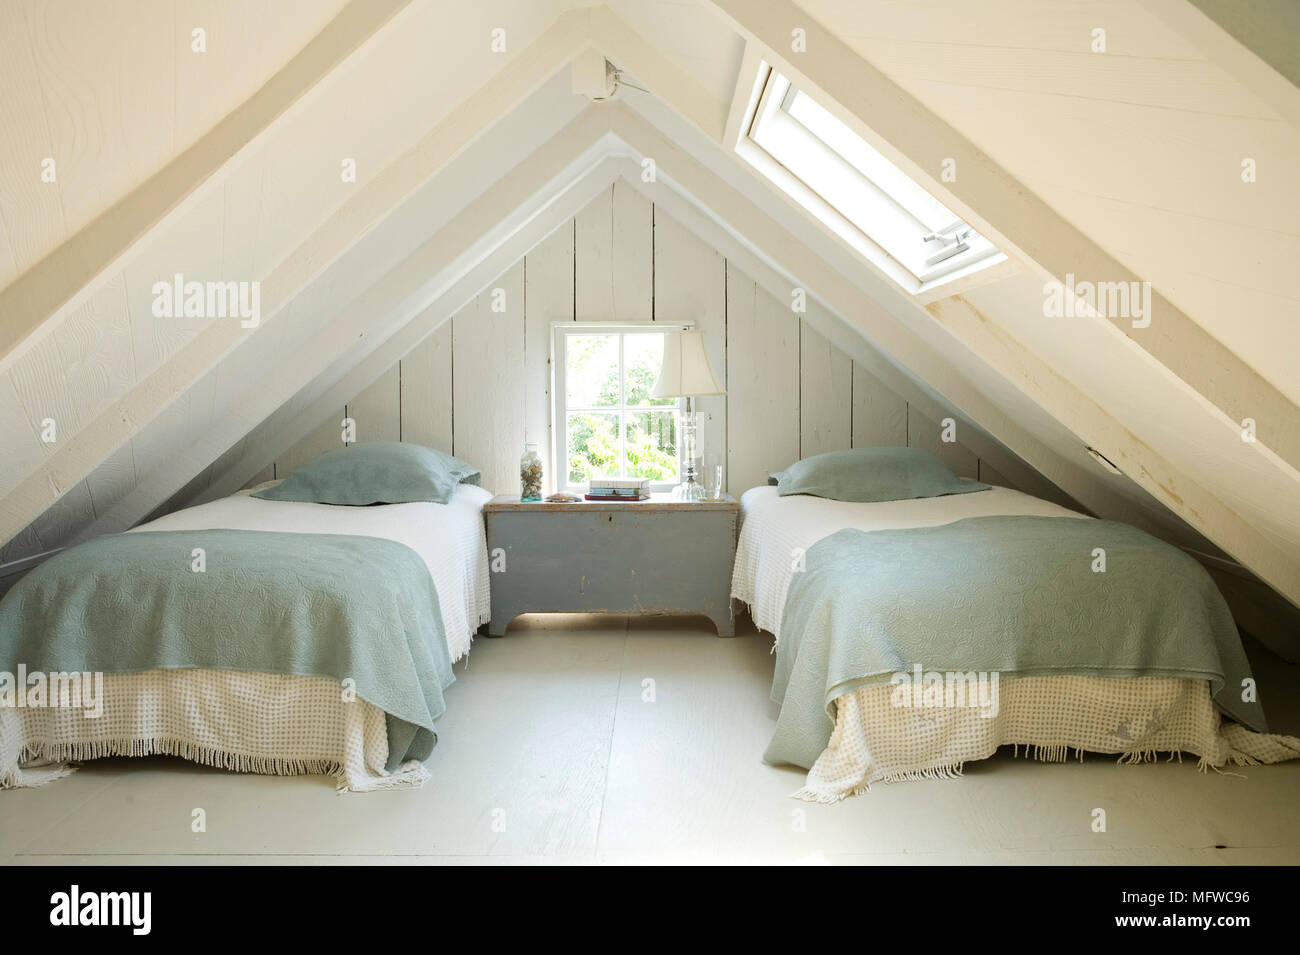 Par de camas supletorias en habitación abuhardillada con techo